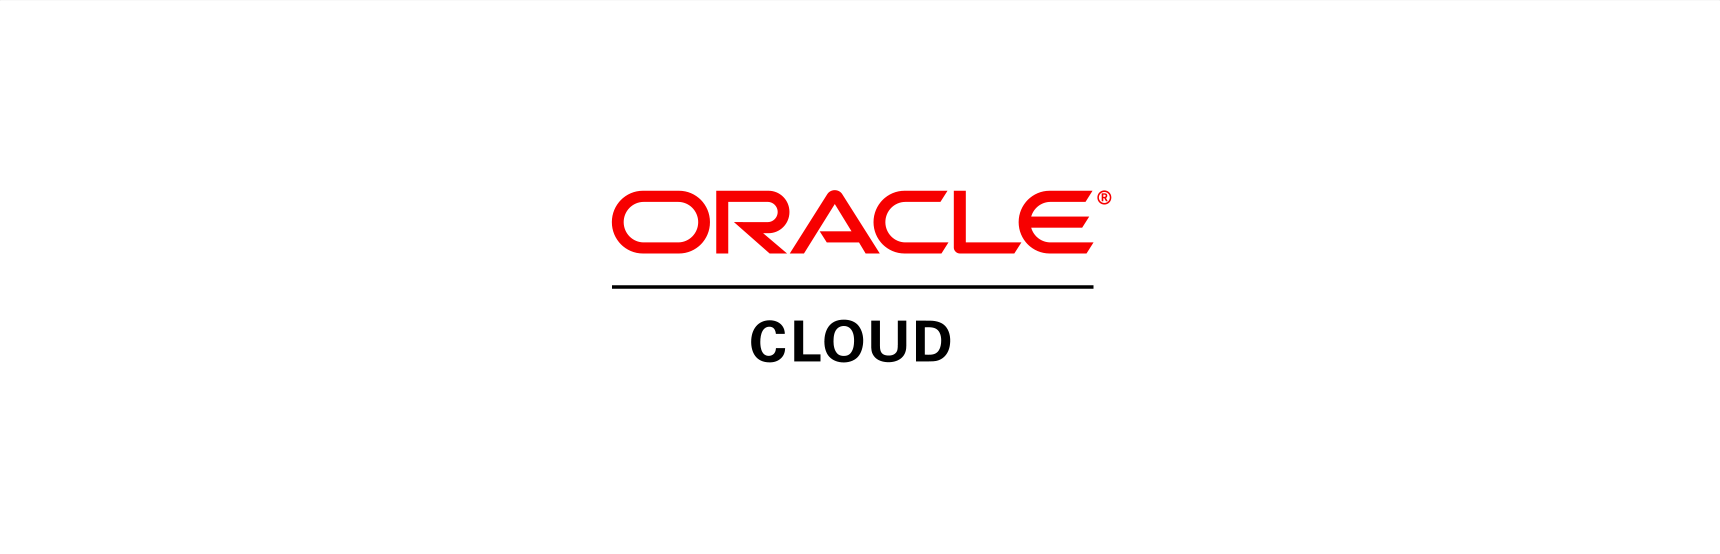 Oracle Cloud Logo - Oracle cloud Logos